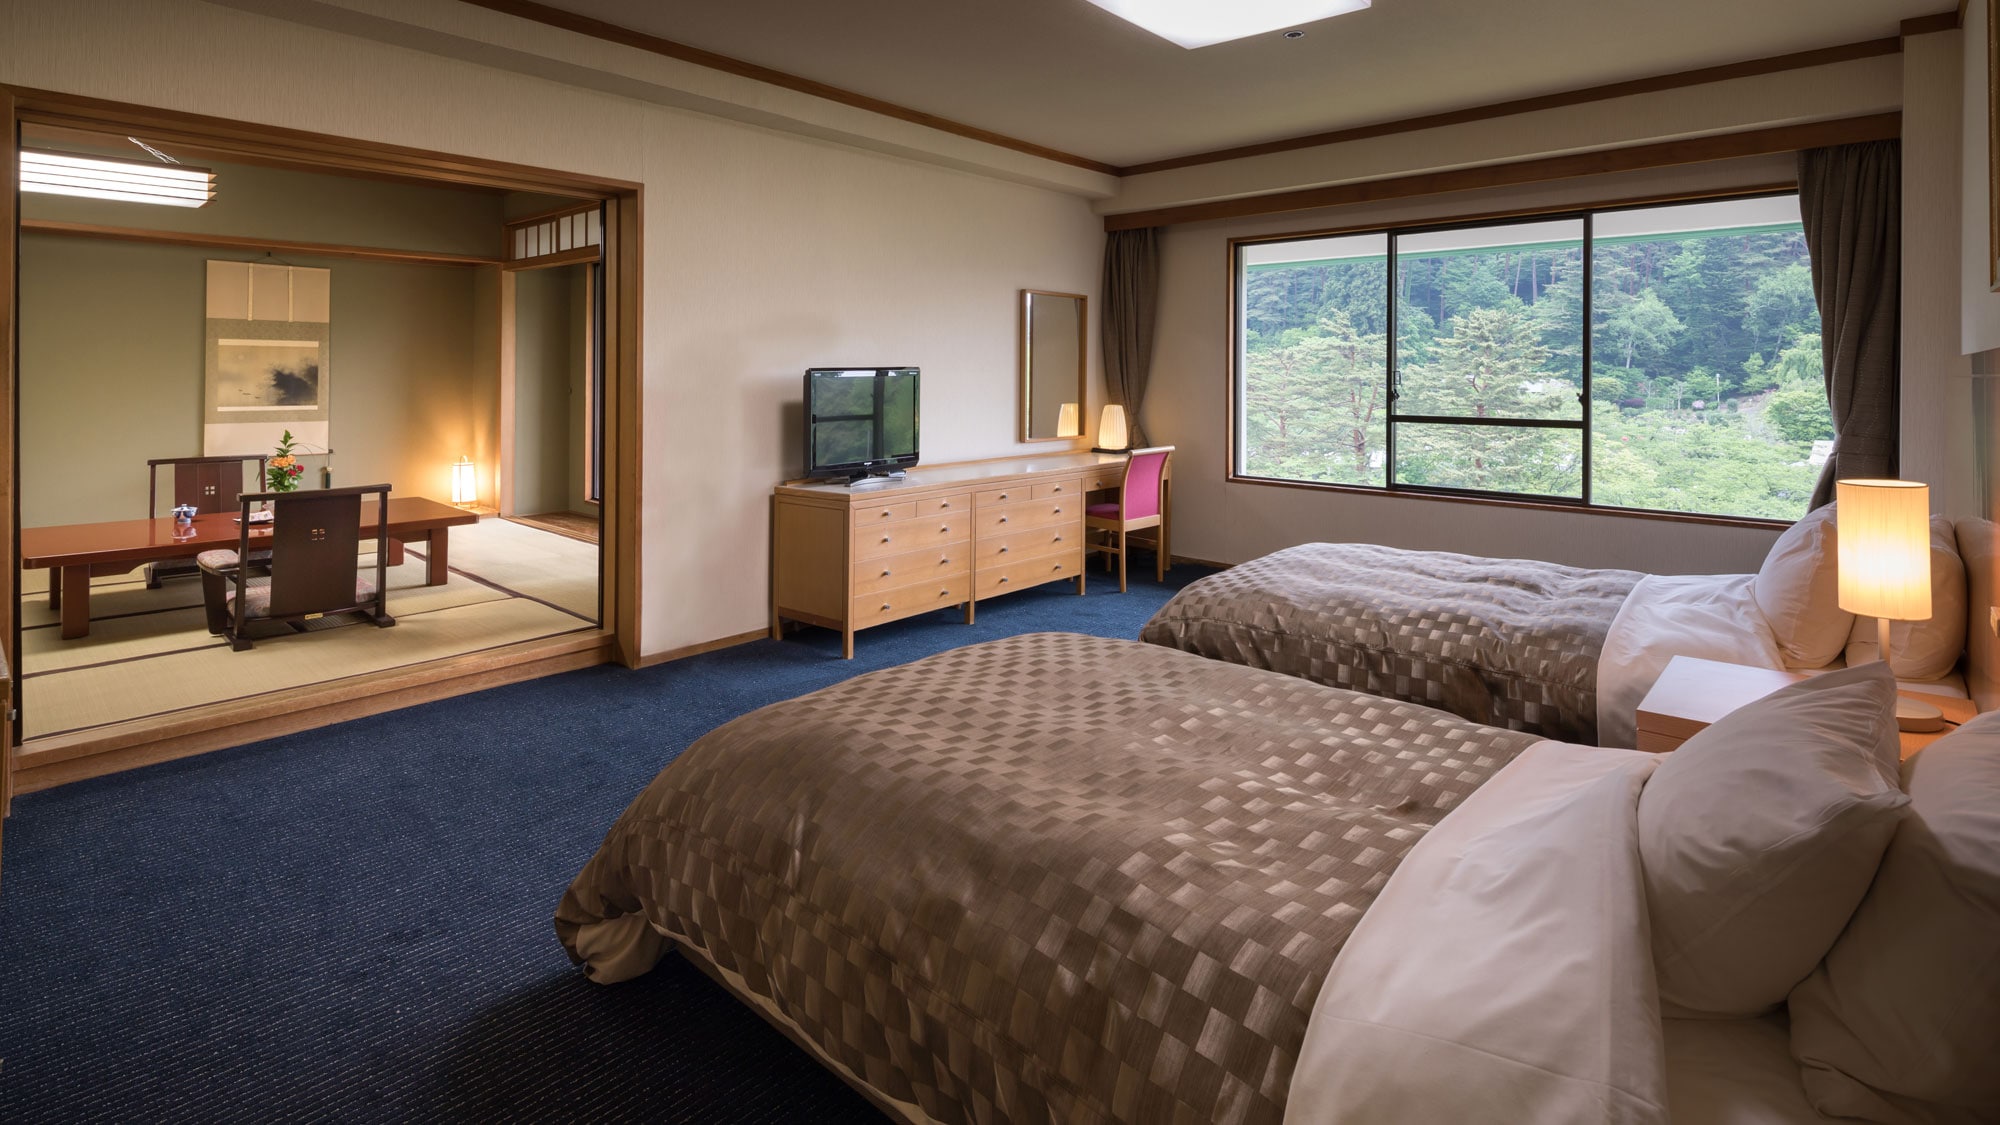 【日西式房間】日式房間12張榻榻米+雙床房